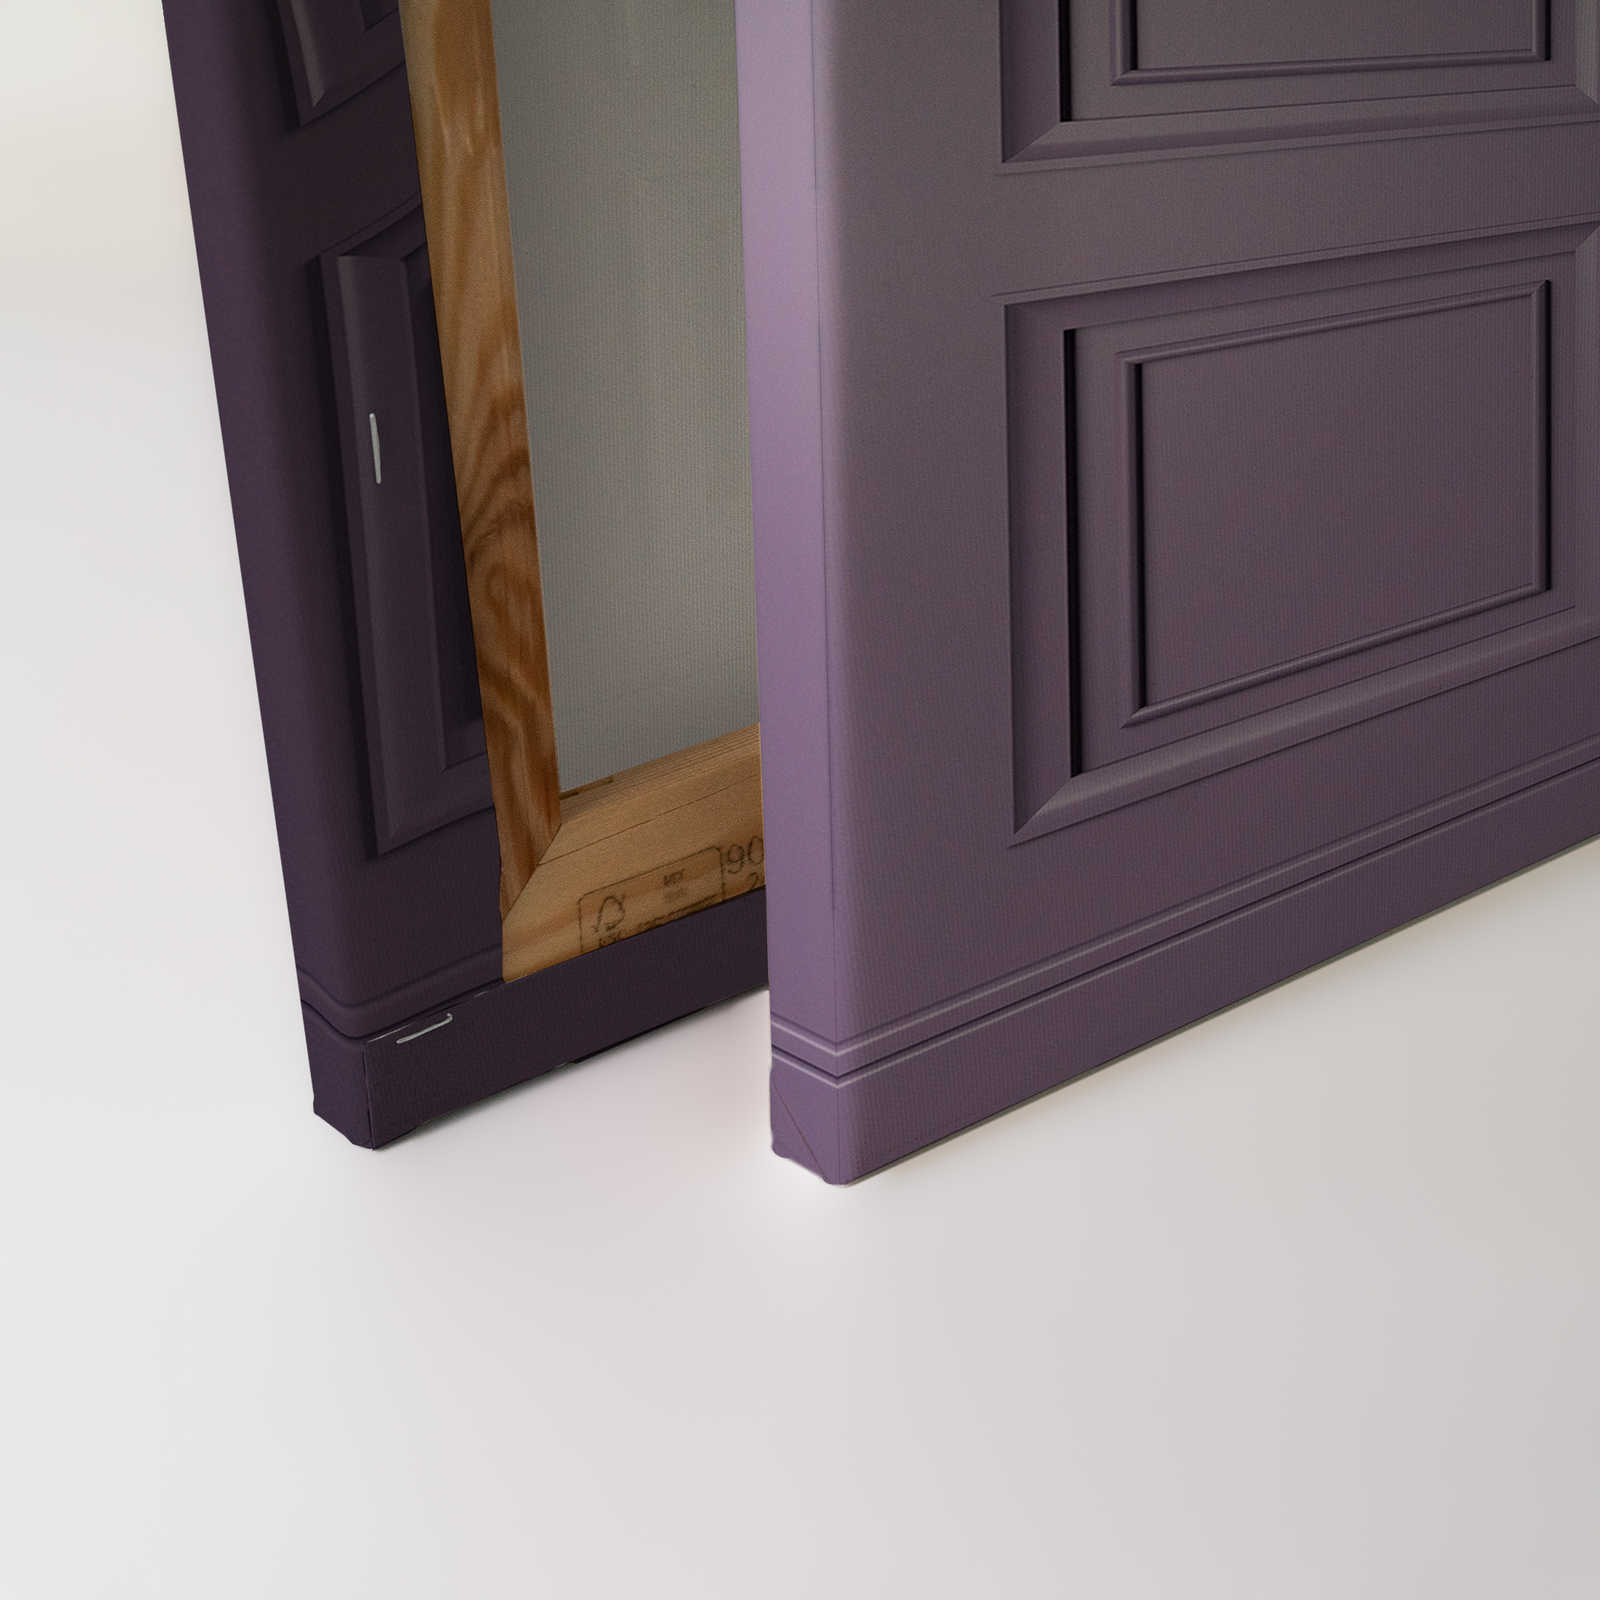             Kensington 3 - 3D Lienzo pintura paneles de madera púrpura oscuro, violeta - 1,20 m x 0,80 m
        